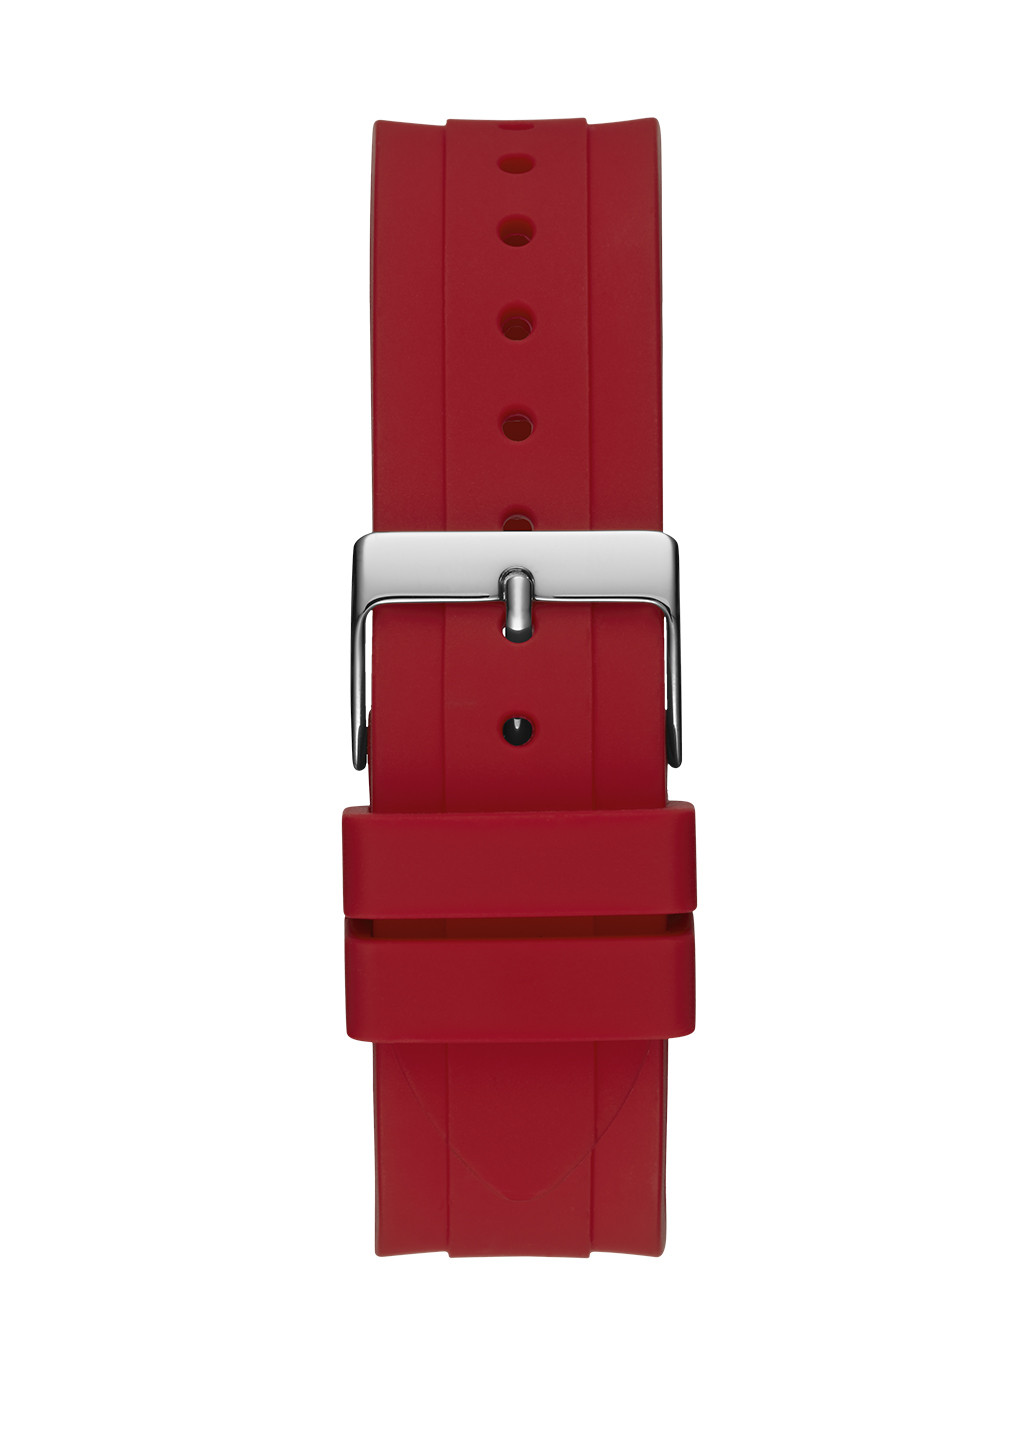 Часы Guess DIGI POP W1282L3 однотонные красные спортивные